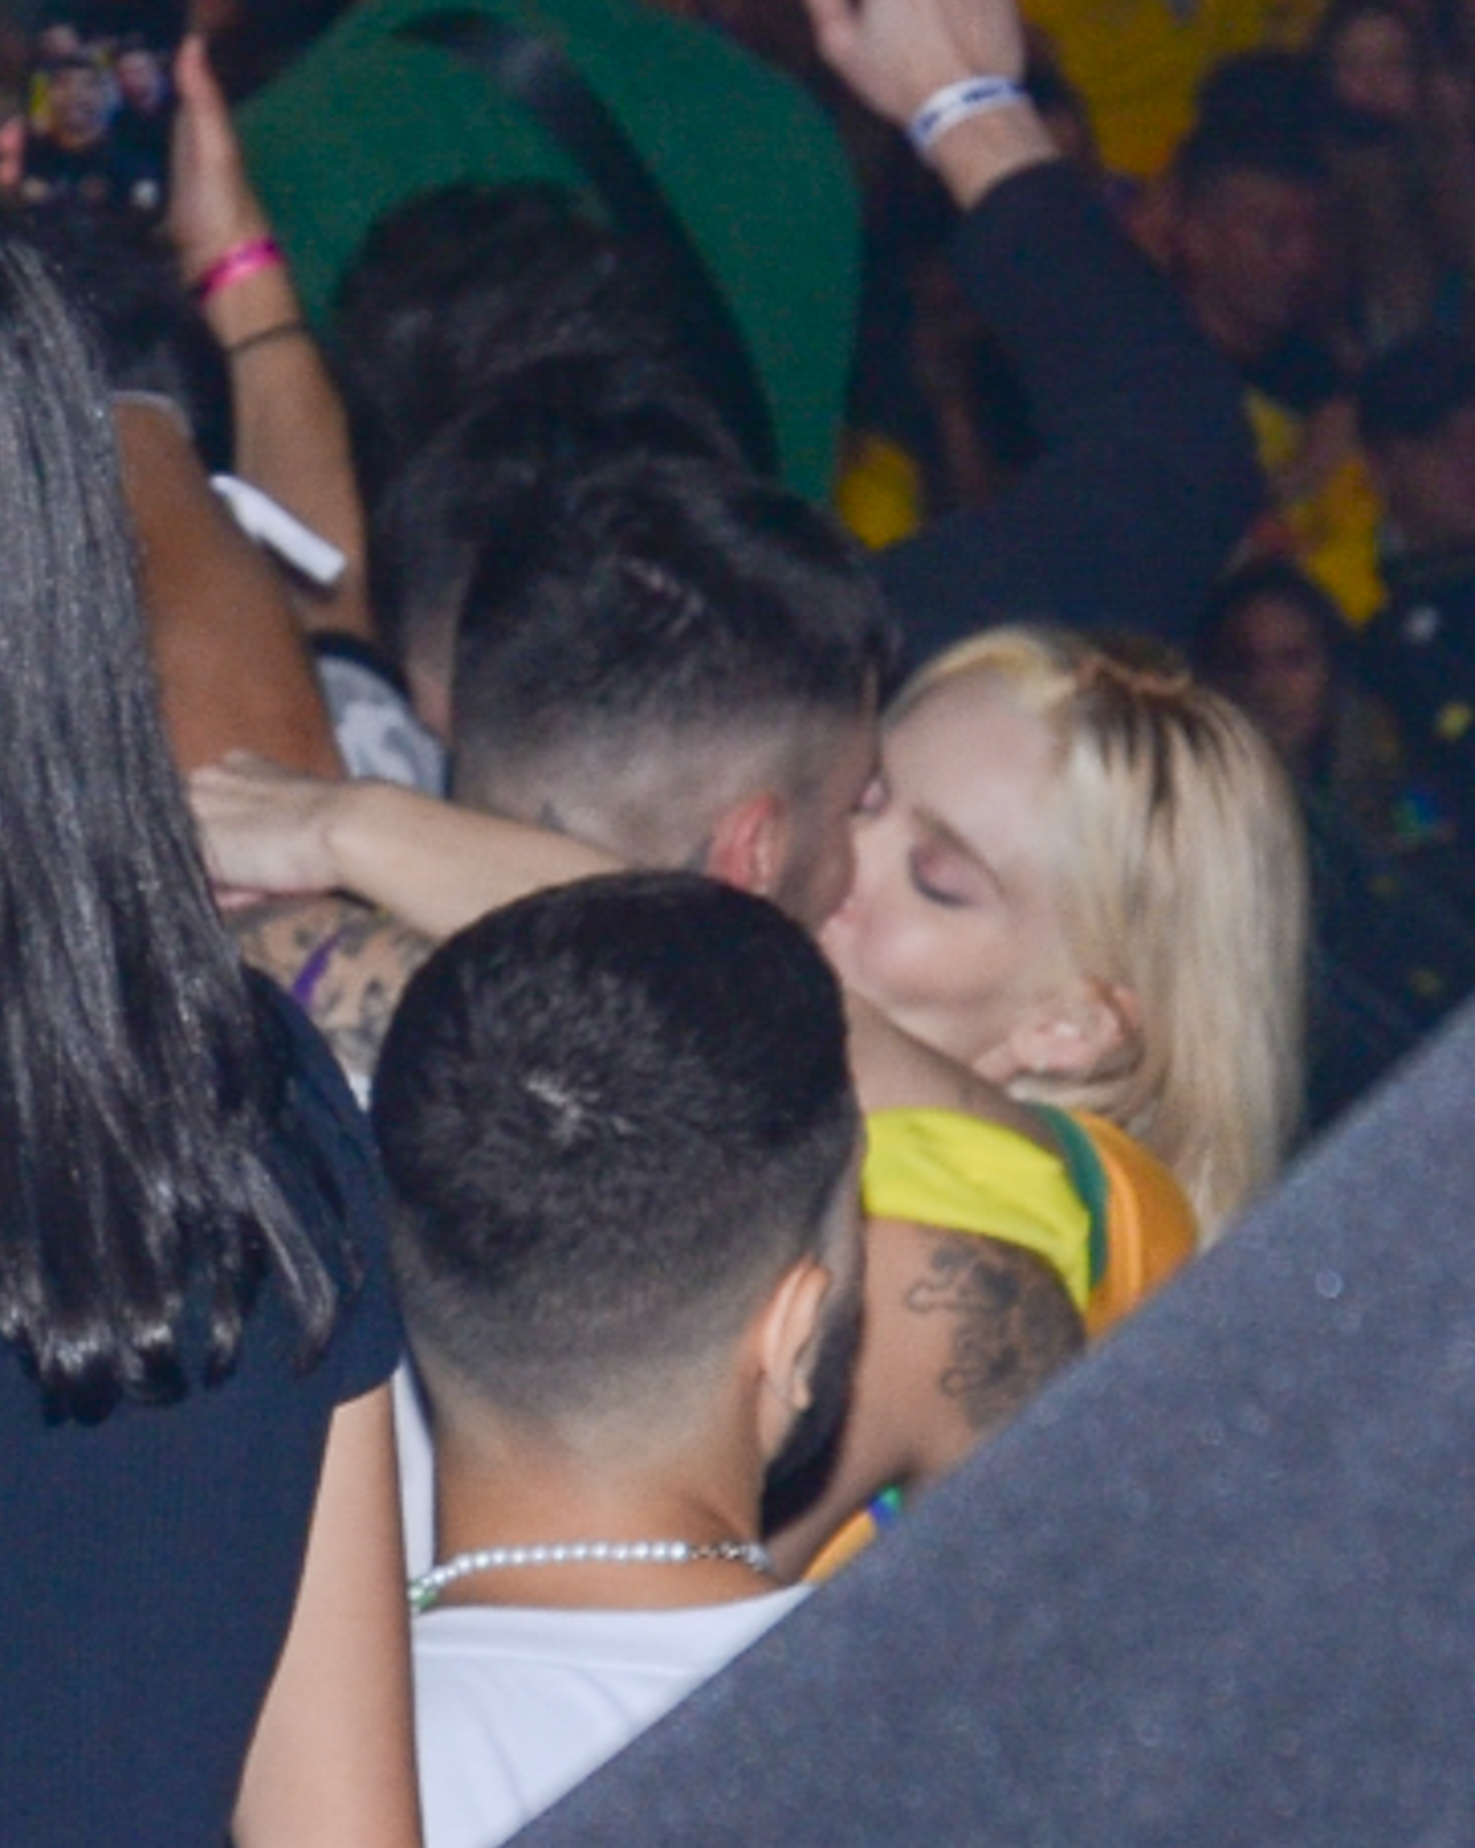 Karoline Lima aparece dando um beijão em Gui Araújo, ela usa uma camisa amarela do Brasil e está com os braços no pescoço do ex-A Fazenda. Os dois estã cercados por outras pessoas presentes no evento